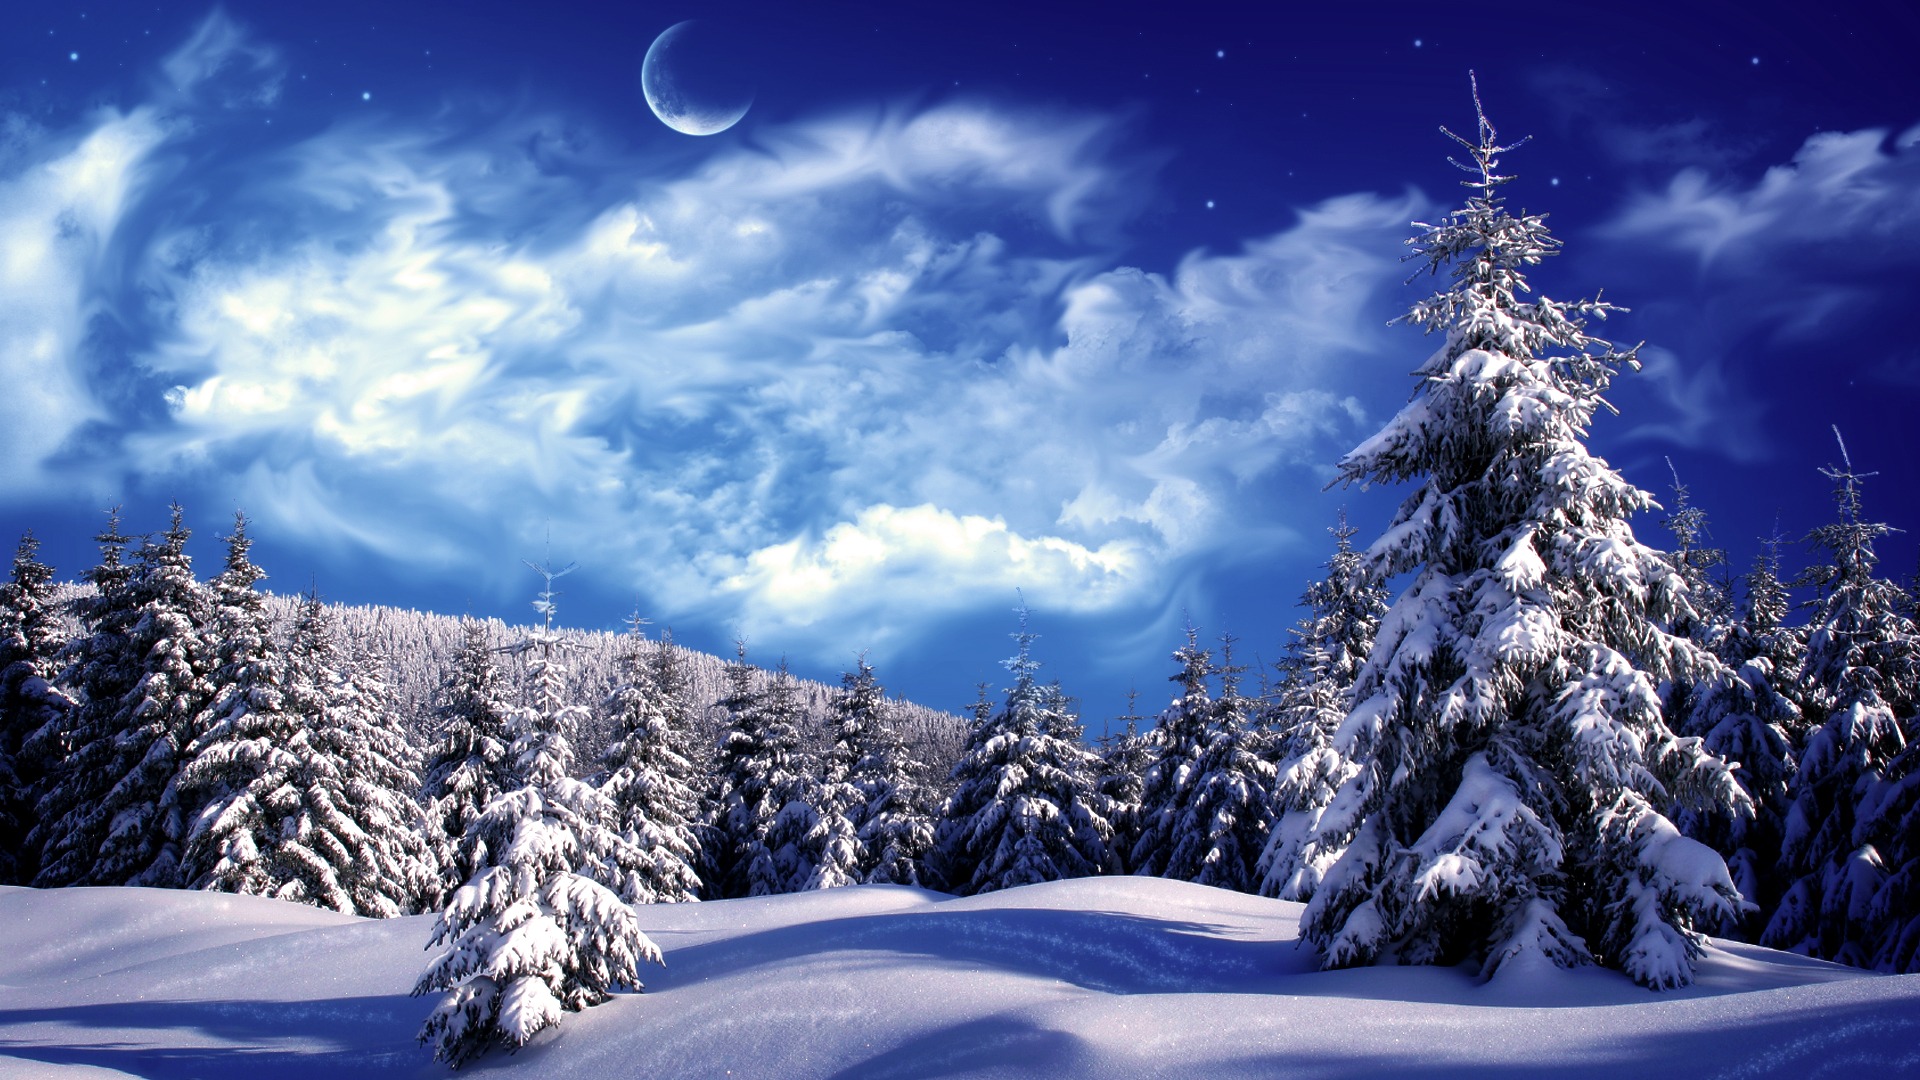 Blue Mountains Winter Wonderland Wallpaper Wallpaper Hd